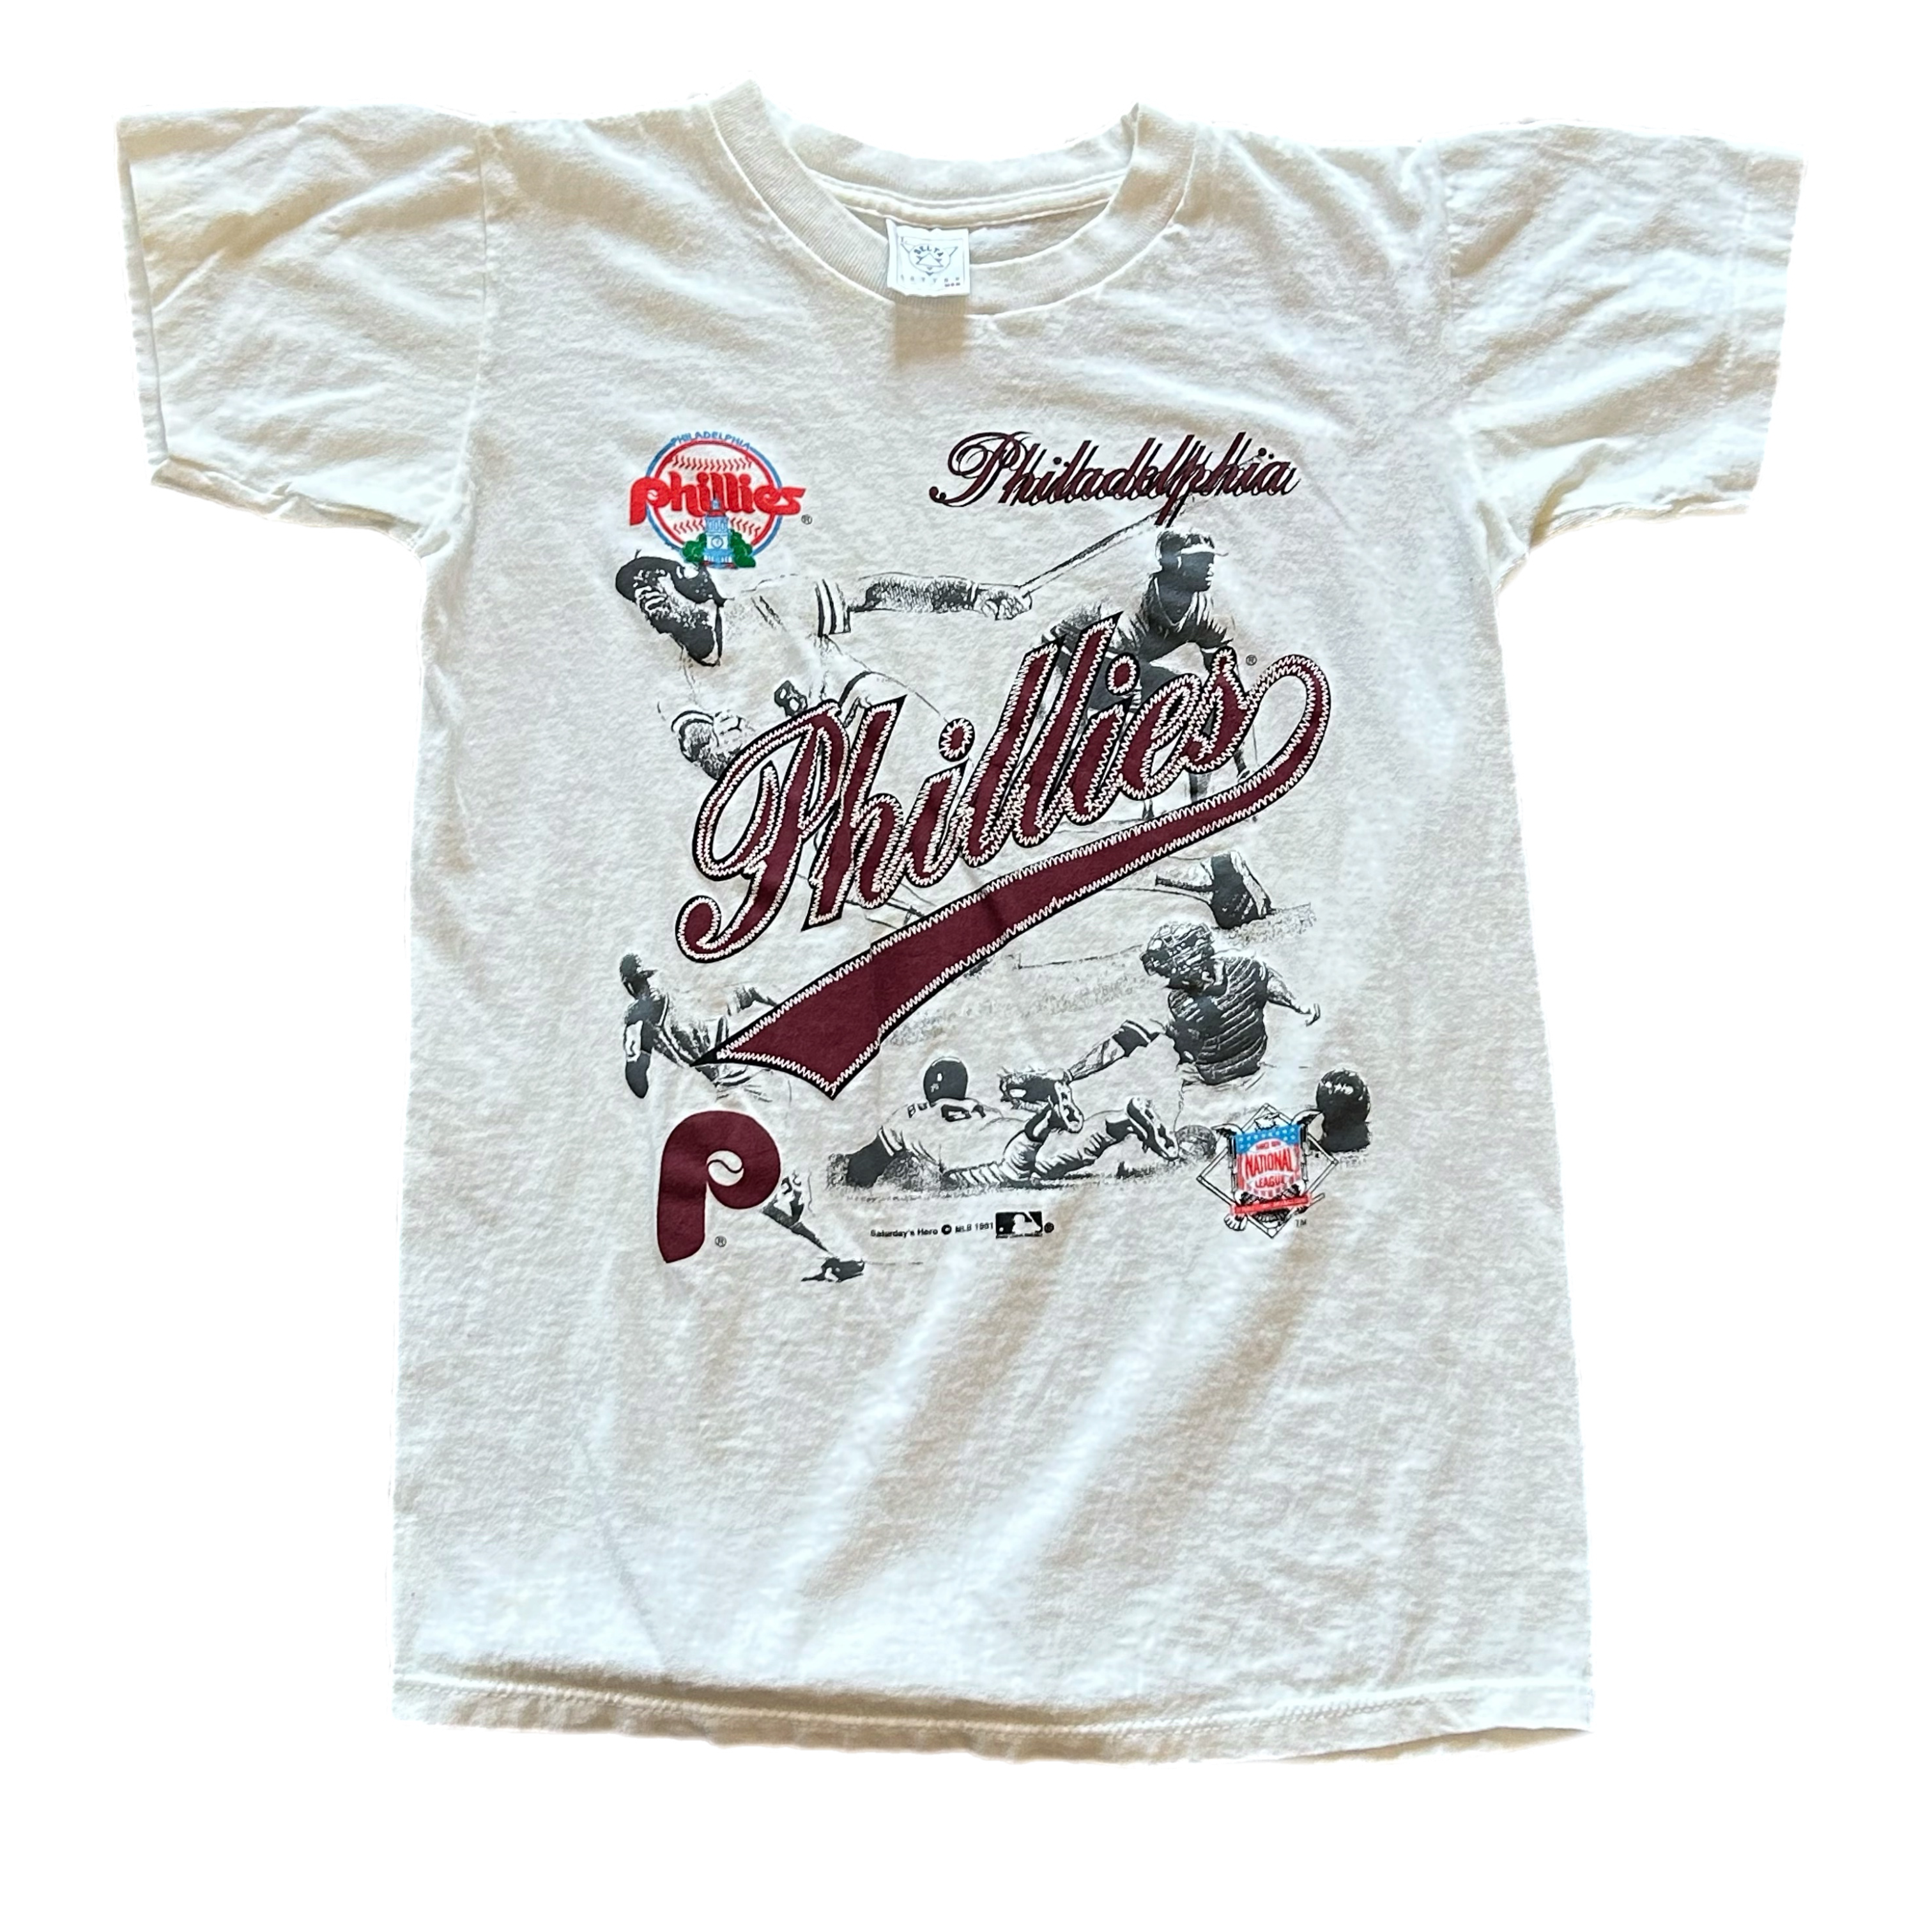 Vintage 1990s Philadelphia Phillies Tee